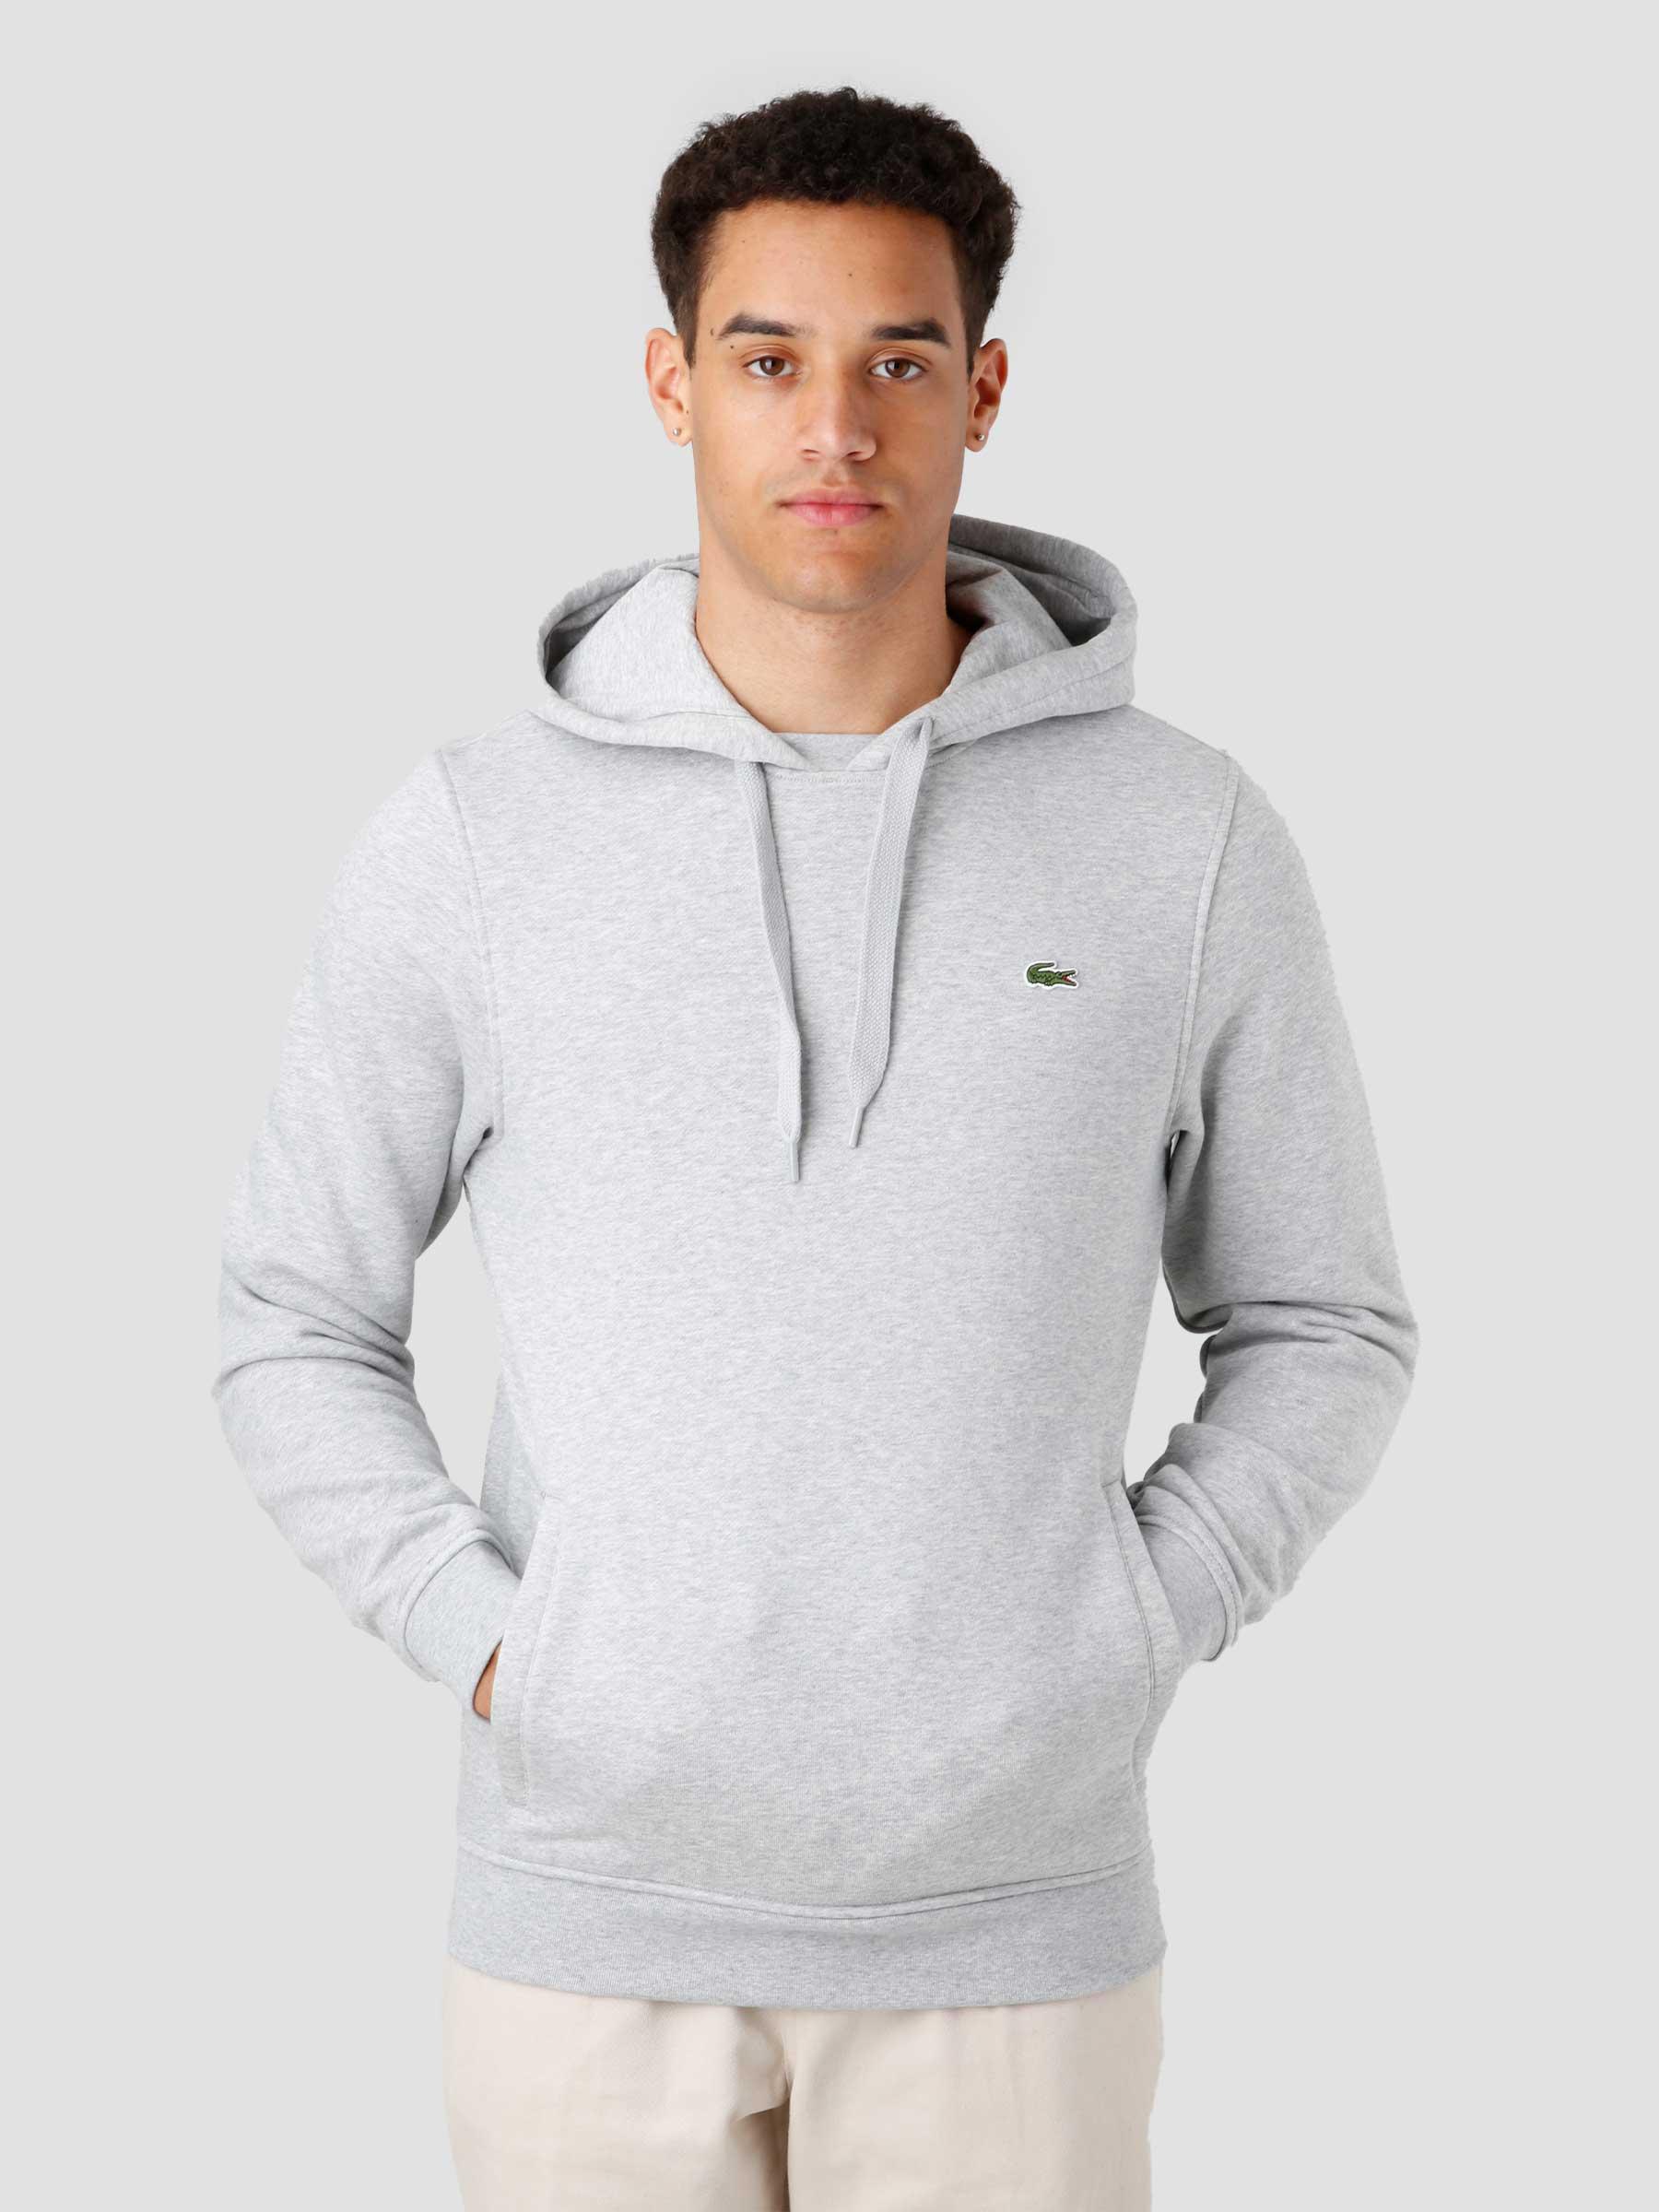  Men's Sweatshirt Grey SH1527-21